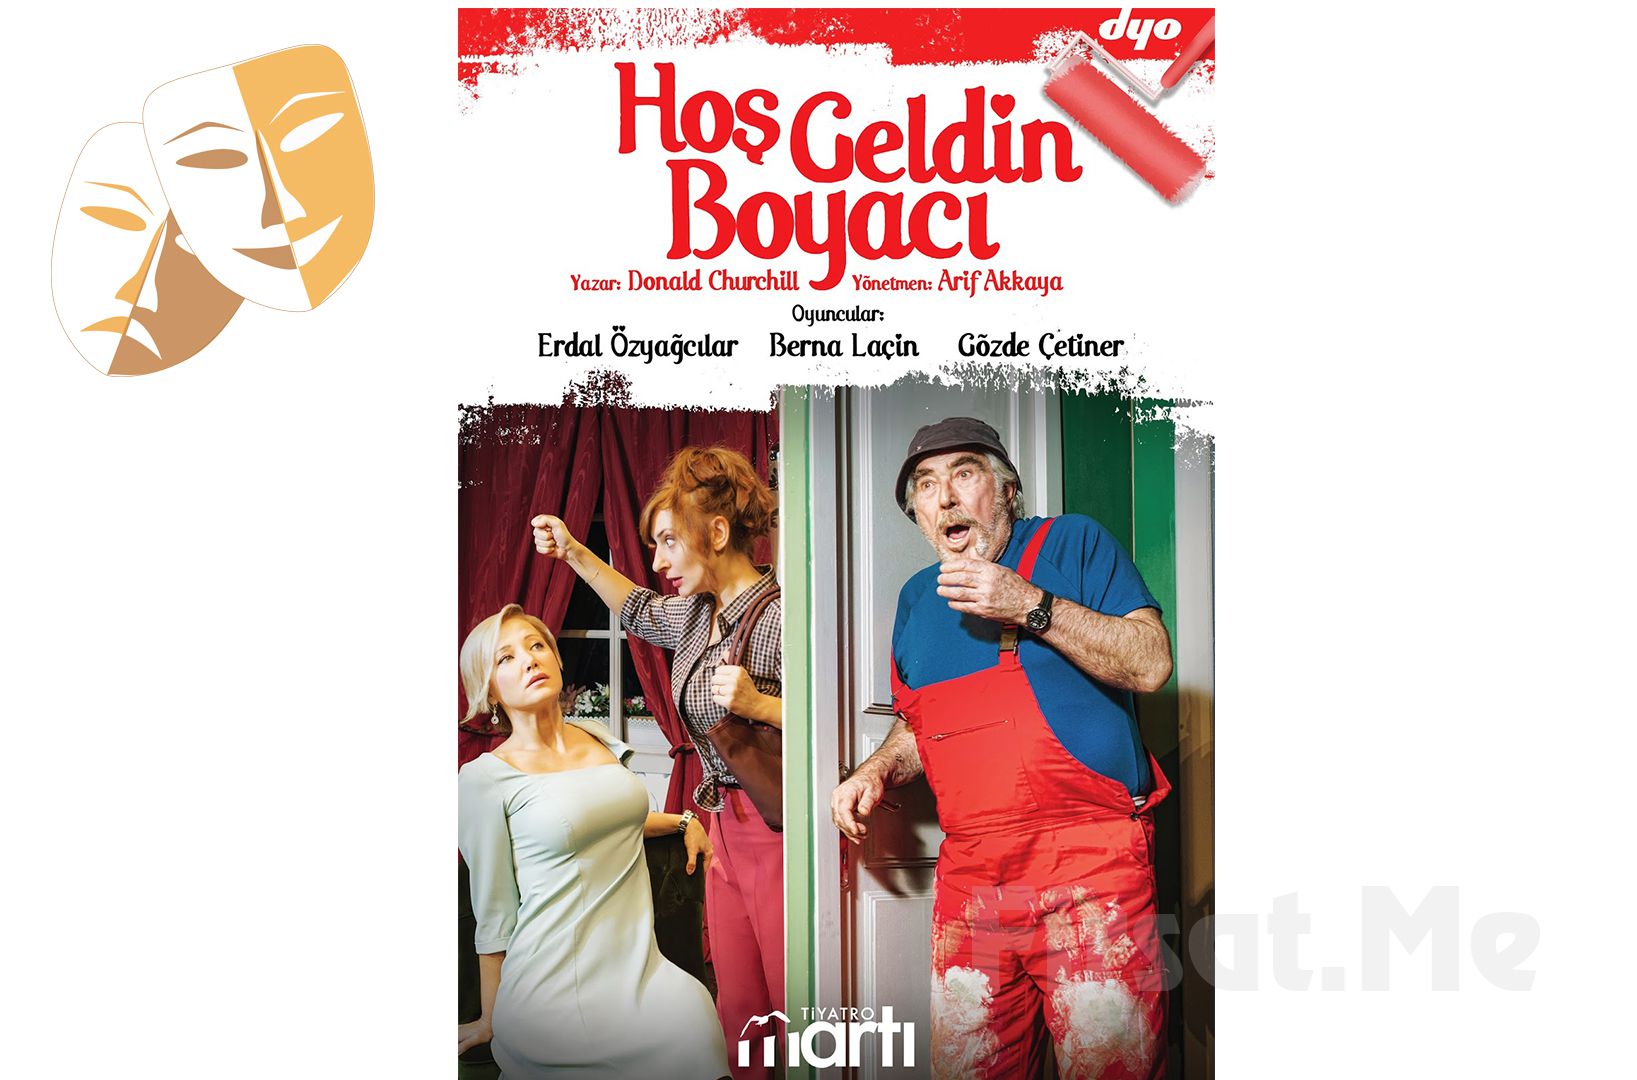 Erdal Özyağcılar, Berna Laçin, Gözde Çetiner, 'Hoşgeldin Boyacı' Tiyatro Oyun Bileti